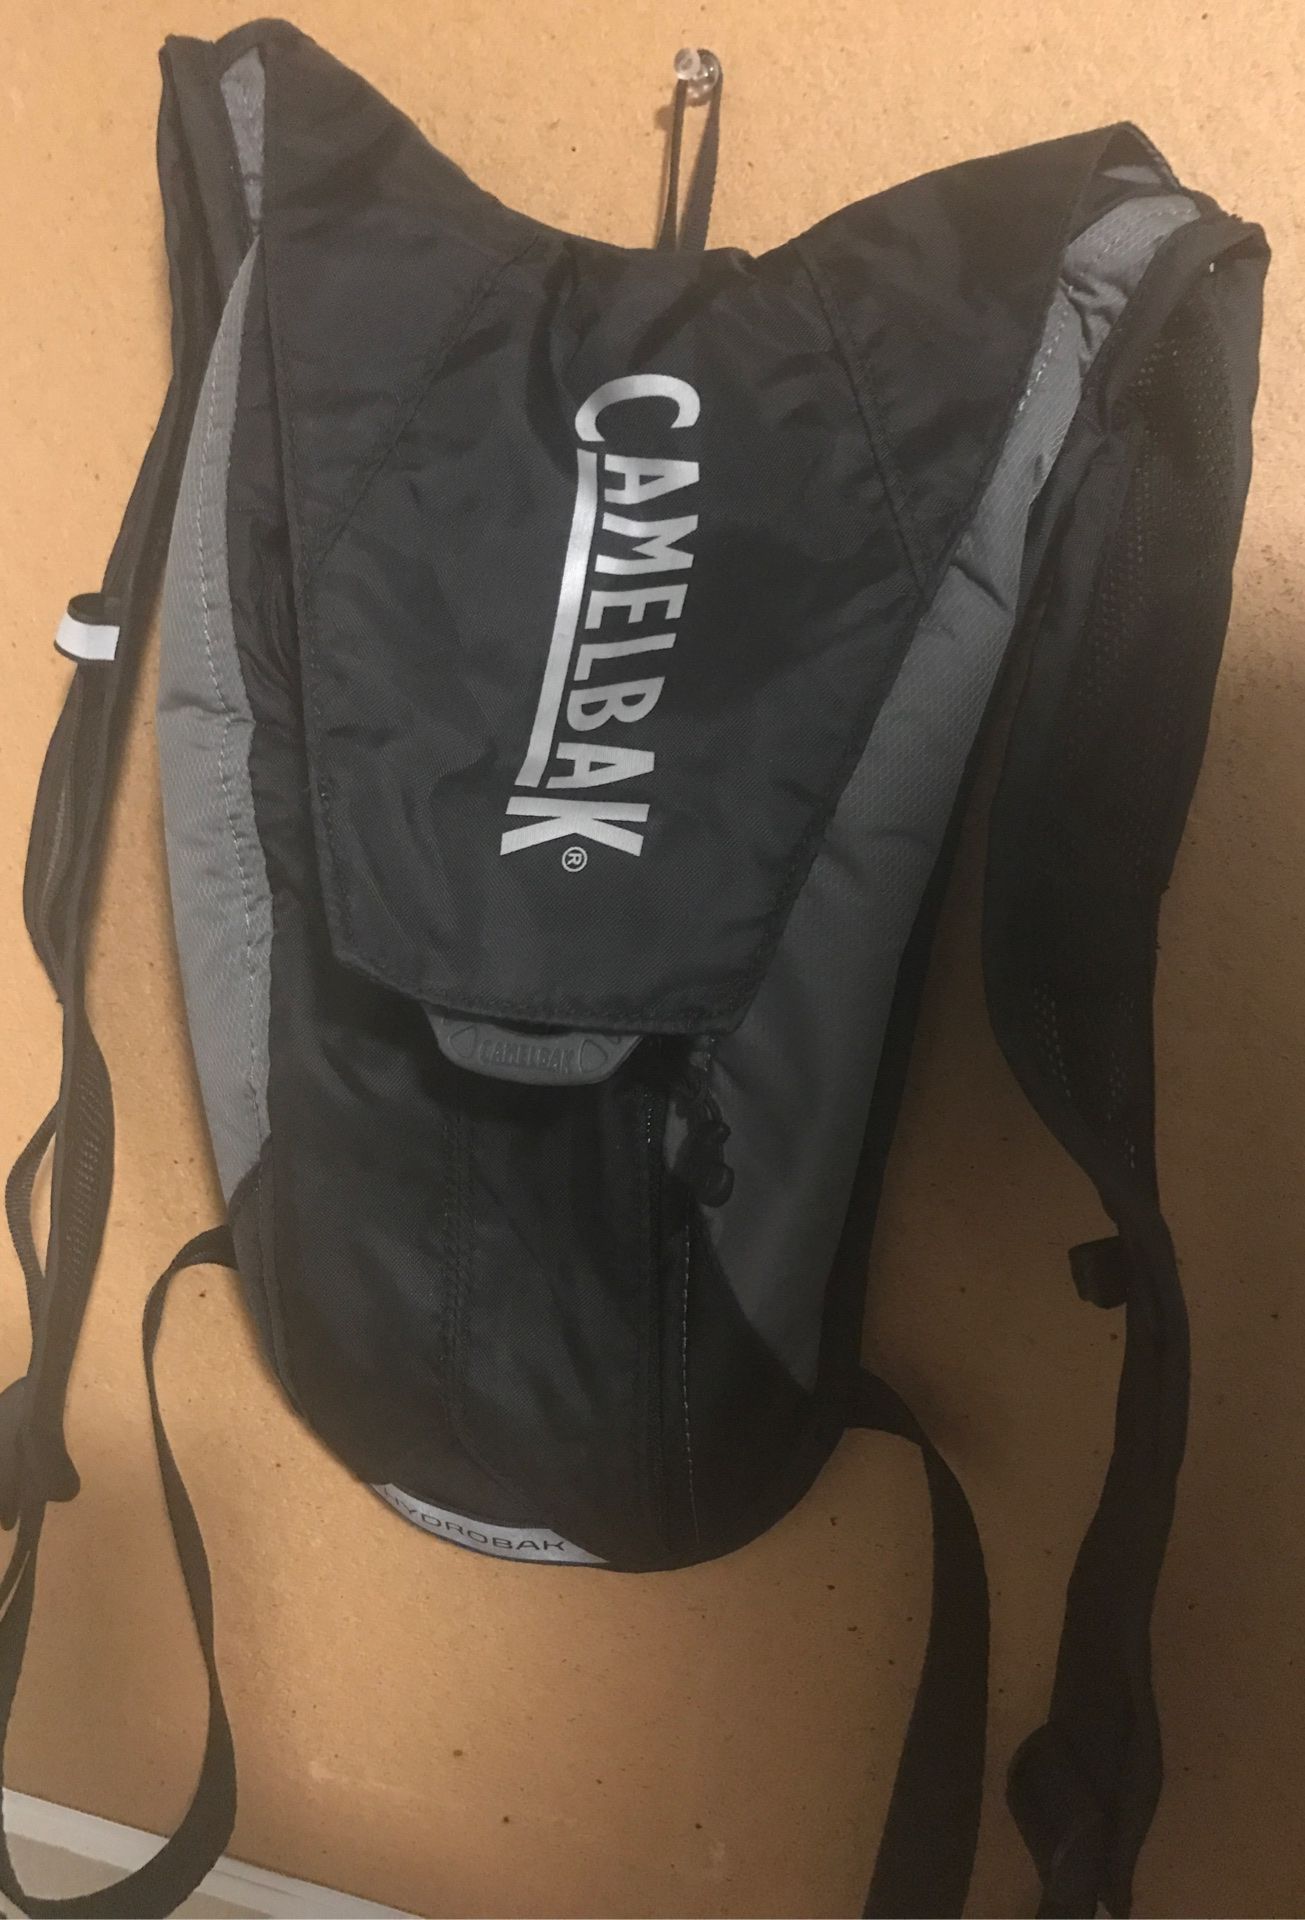 Camelbak water bottle backpack